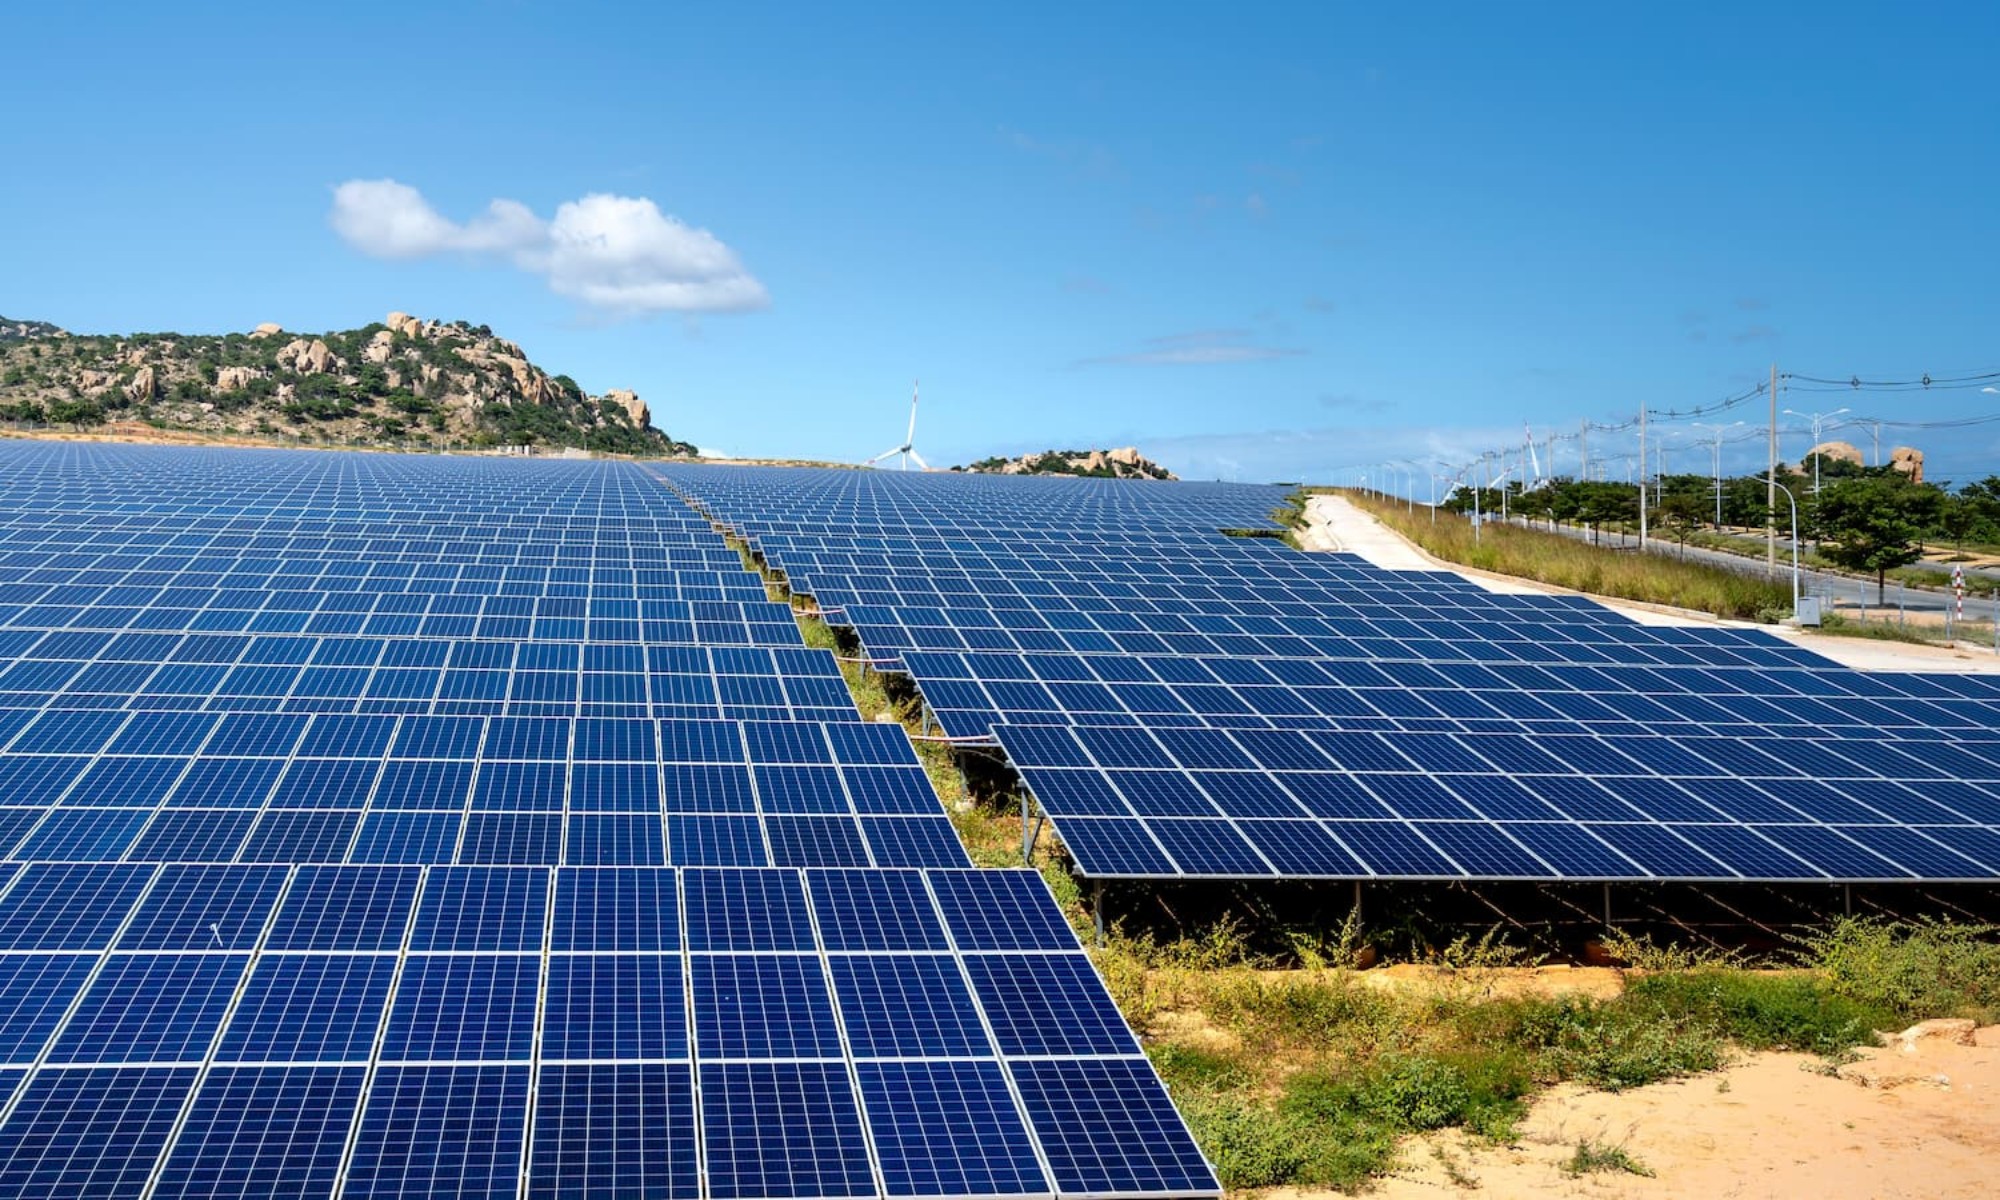 La granja solar de Queensland estará lista para el año 2025.